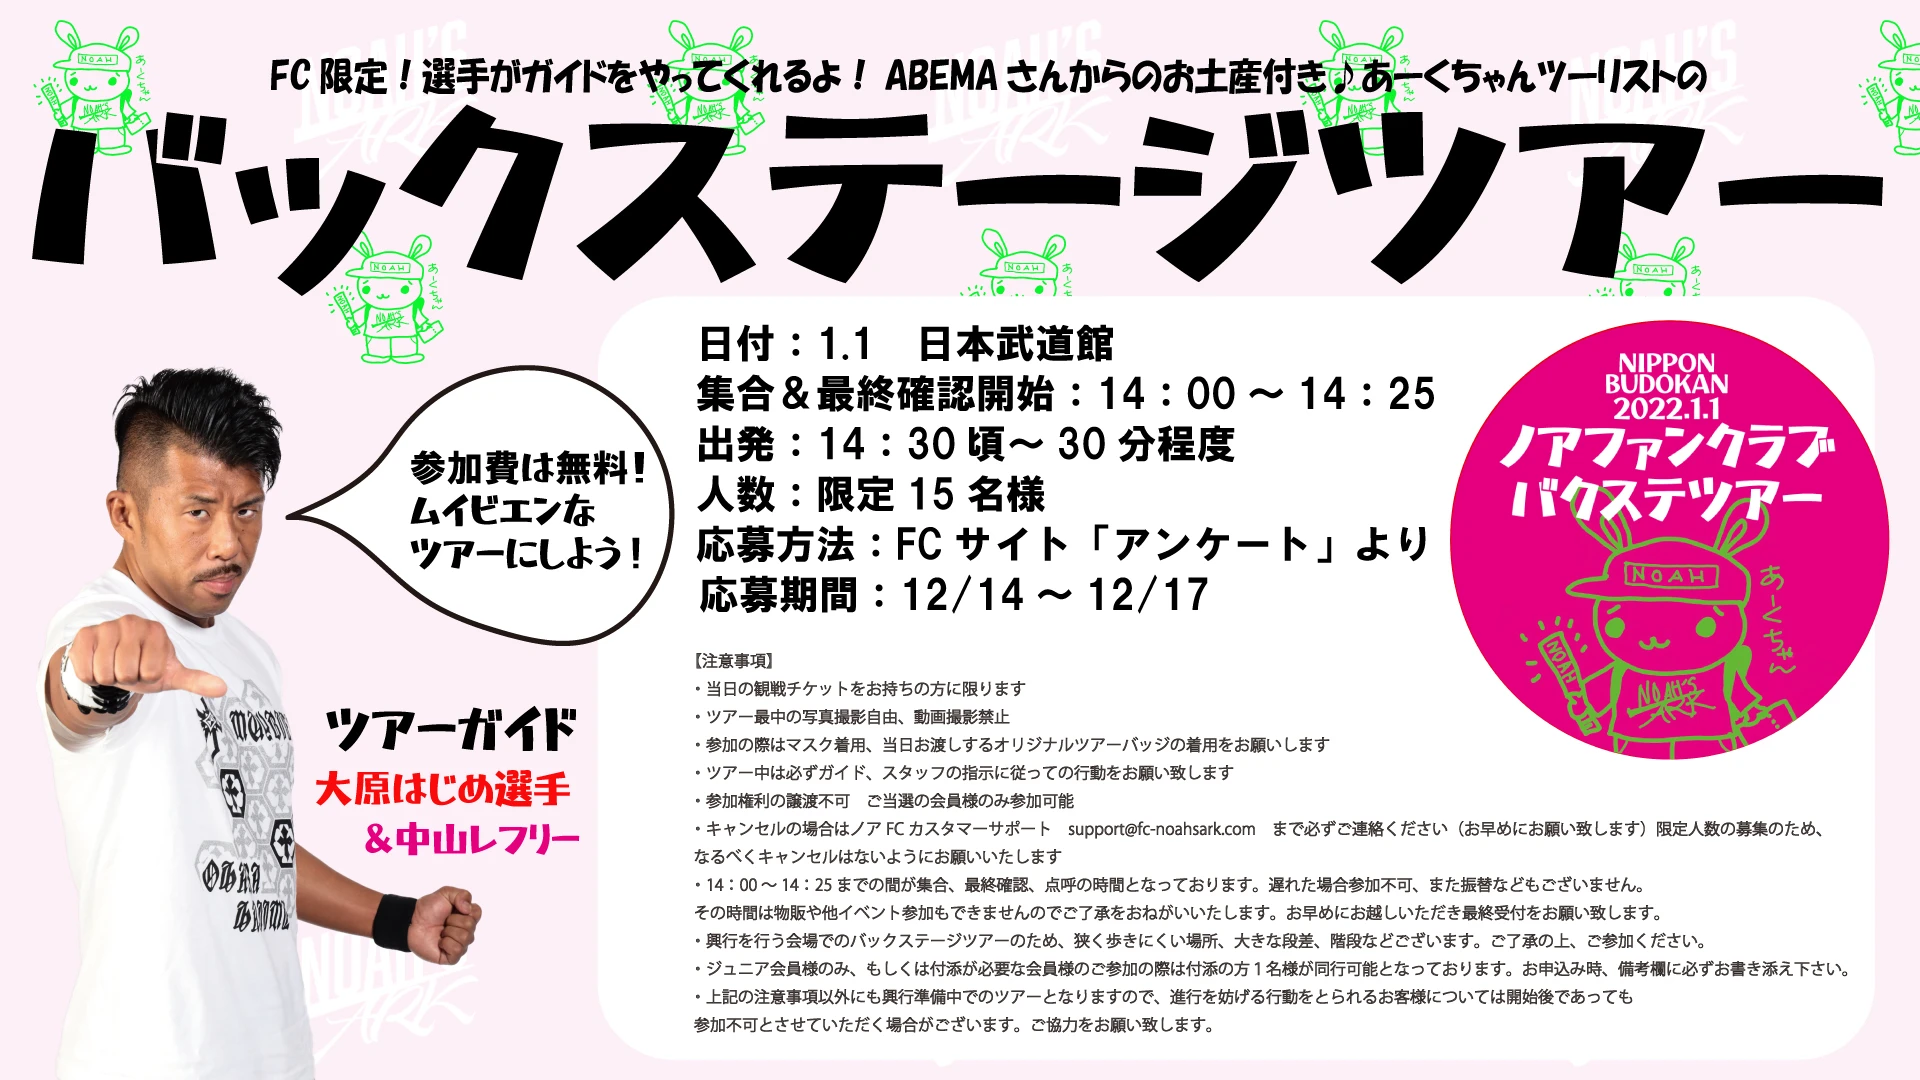 【FC会員限定!!】1.1日本武道館バックステージツアー開催のお知らせ